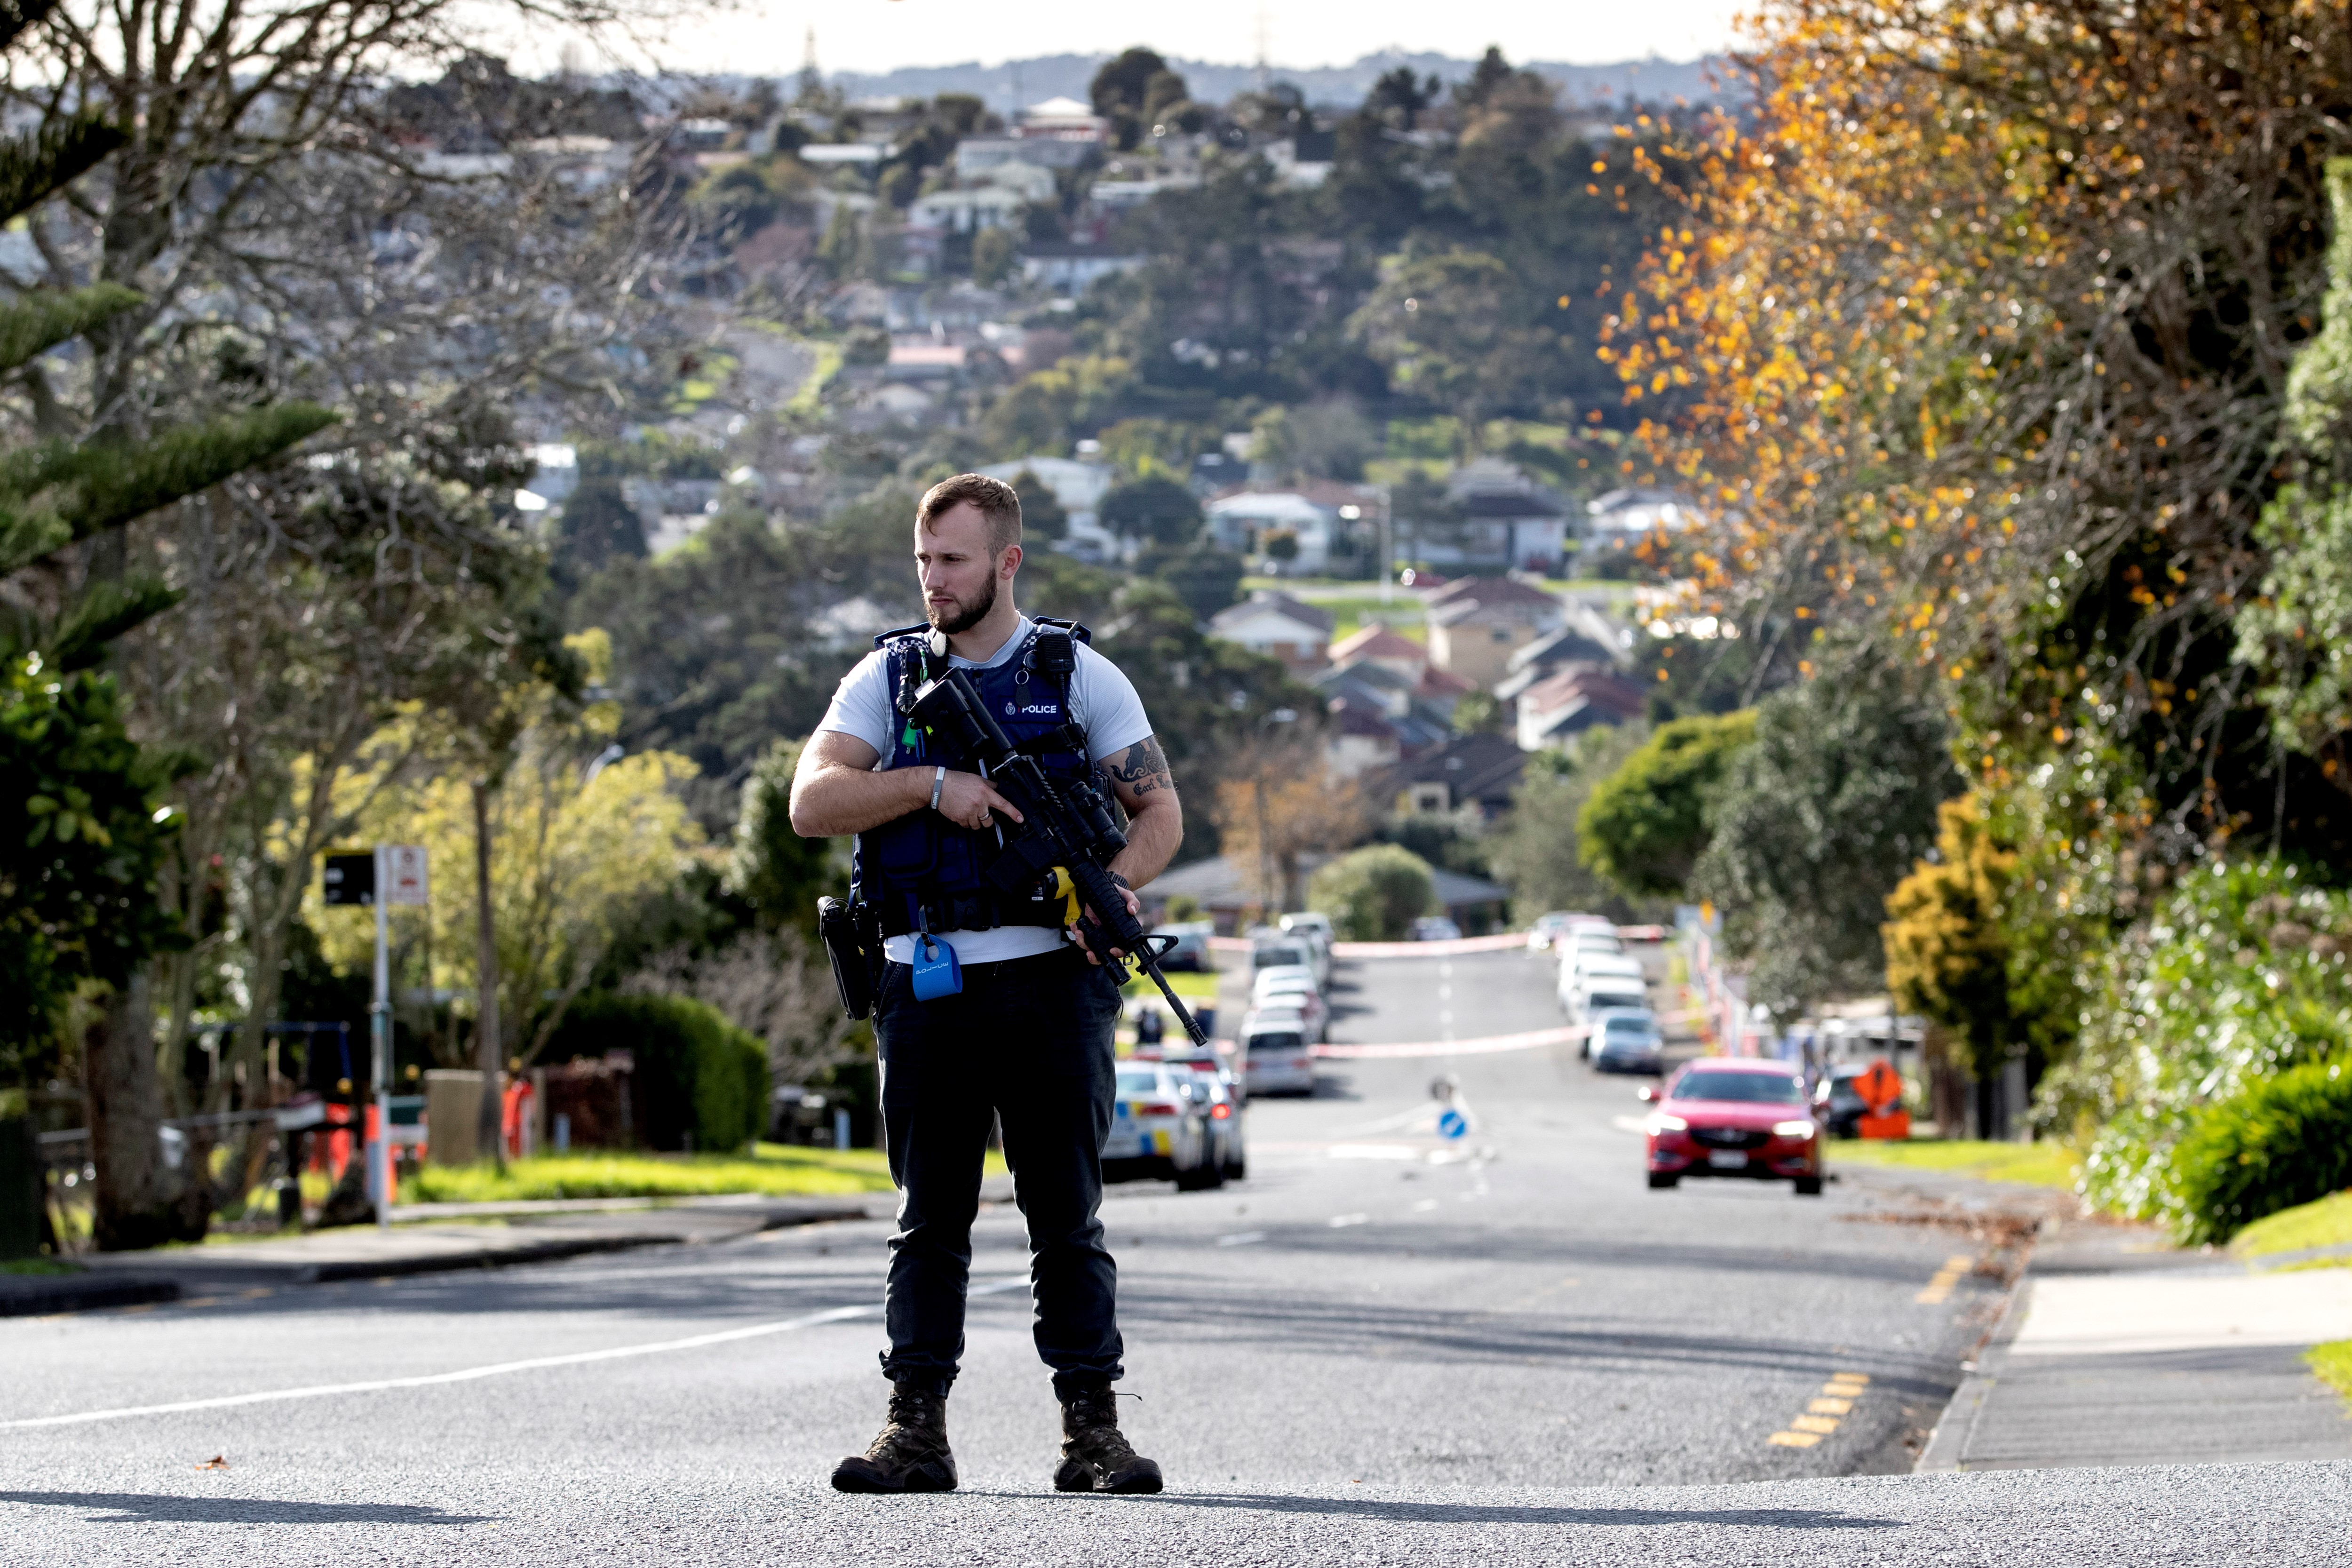 Tizenegy éve először szolgálatteljesítés közben lőttek le egy rendőrt Új-Zélandon